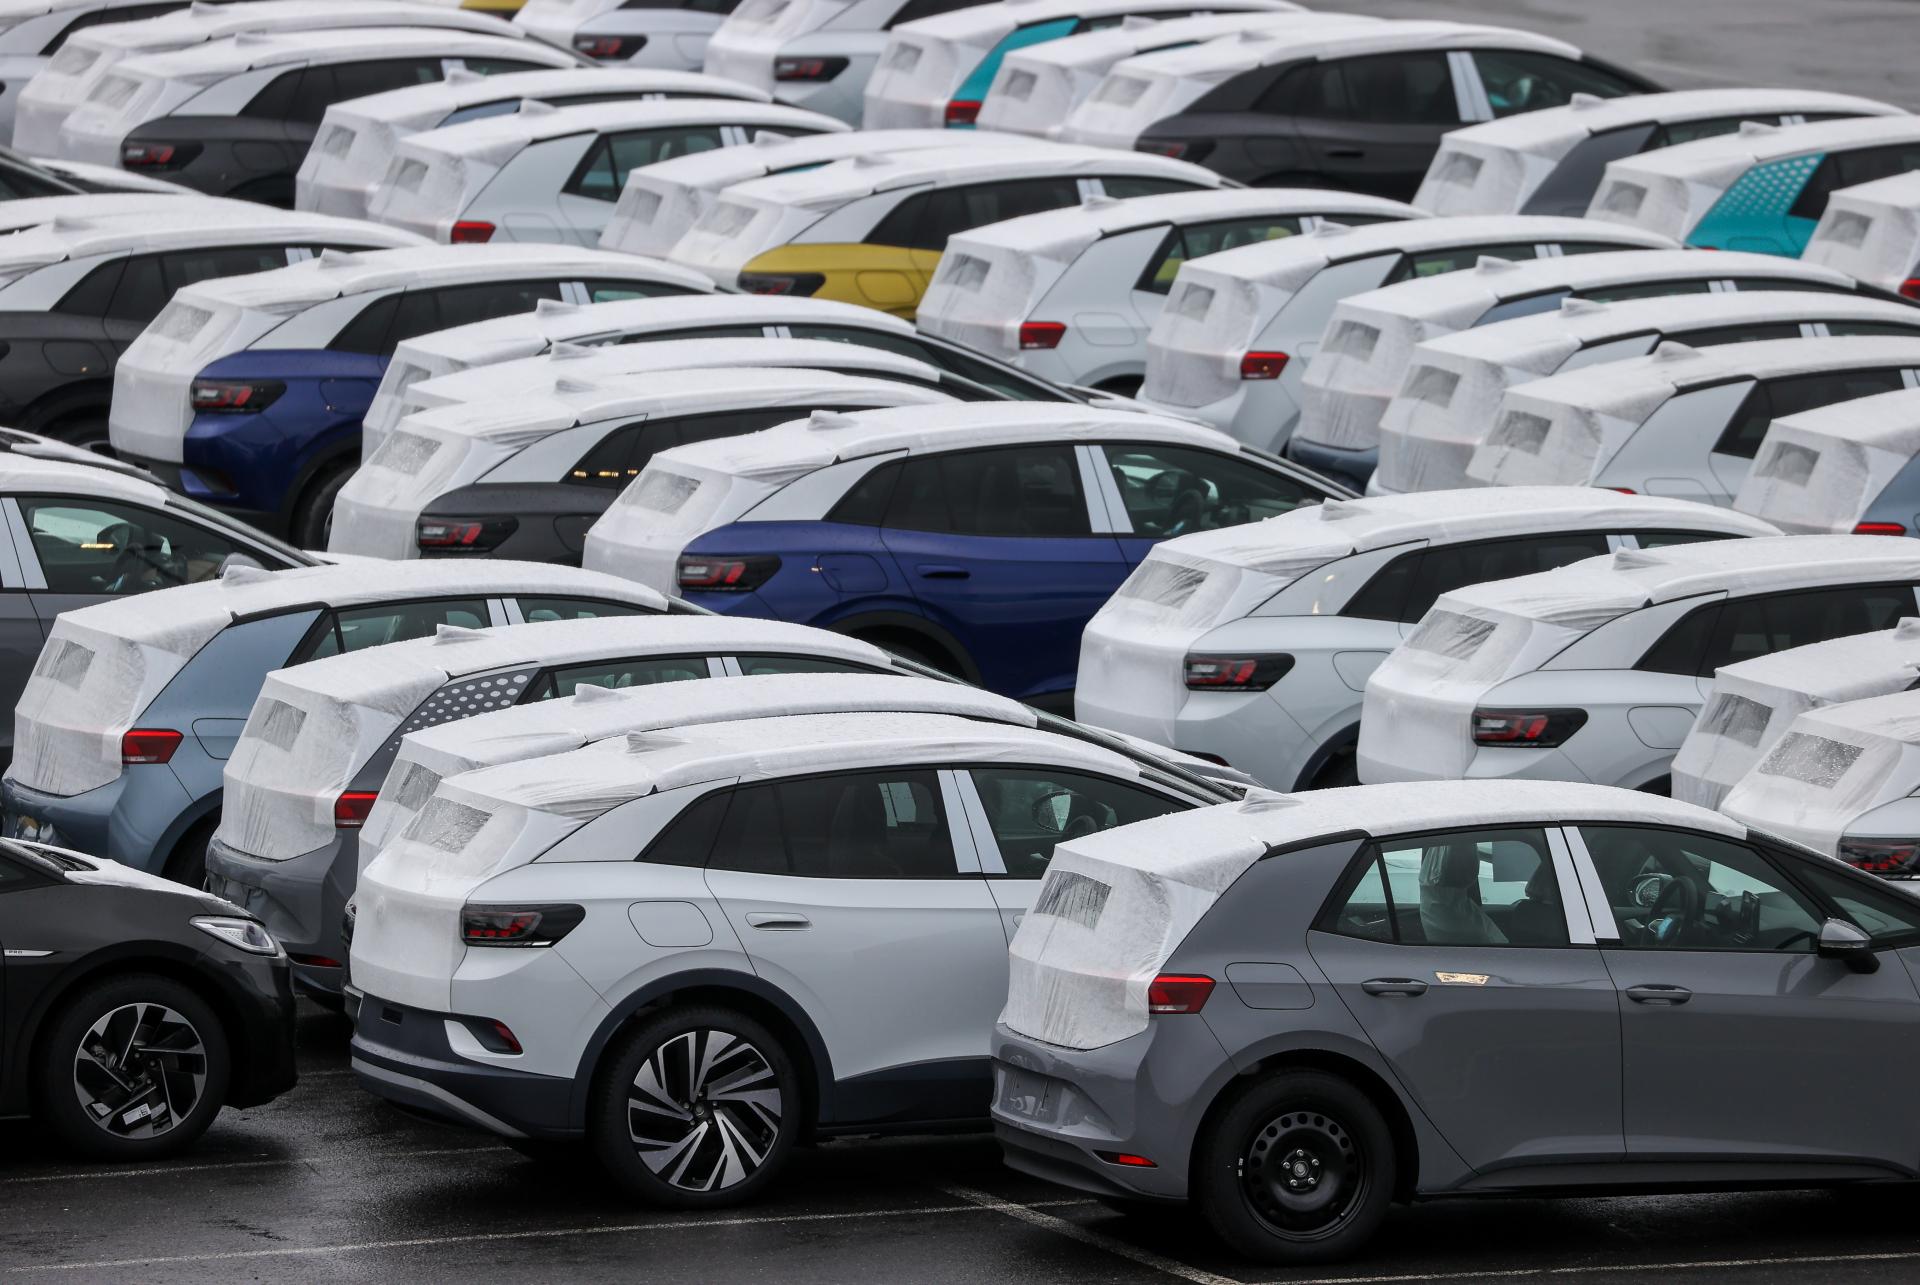 Predaj elektromobilov vlani vzrástol o 60 percent. Tento rok sa však spomalí, predpokladajú analytici